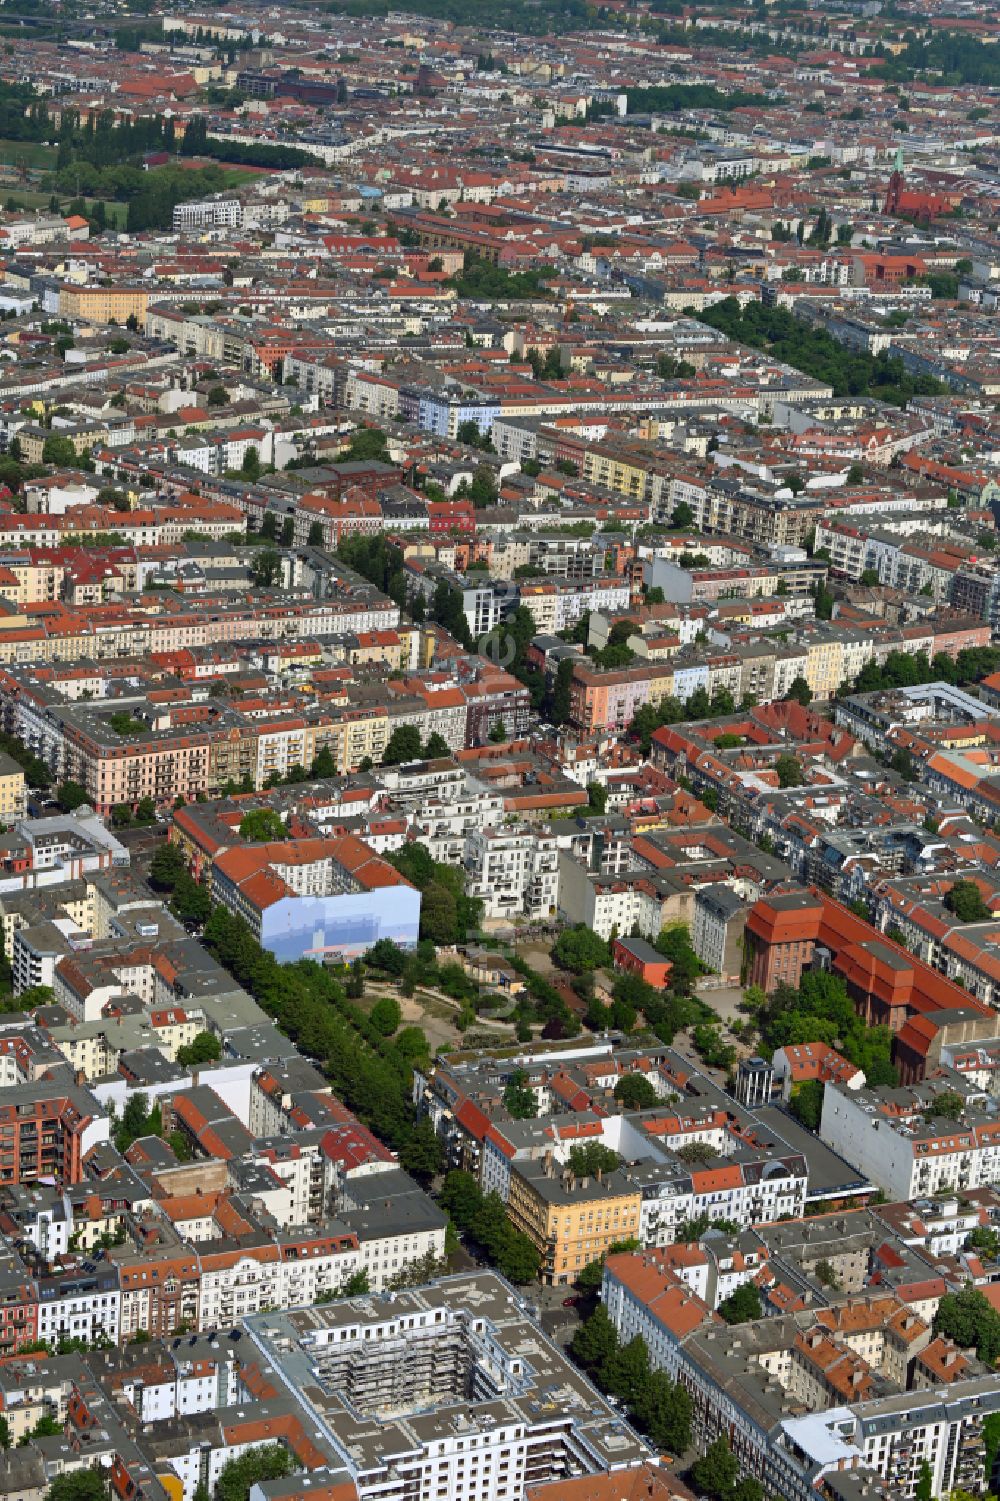 Luftbild Berlin - Innenstadt im Ortsteil Prenzlauer Berg in Berlin, Deutschland